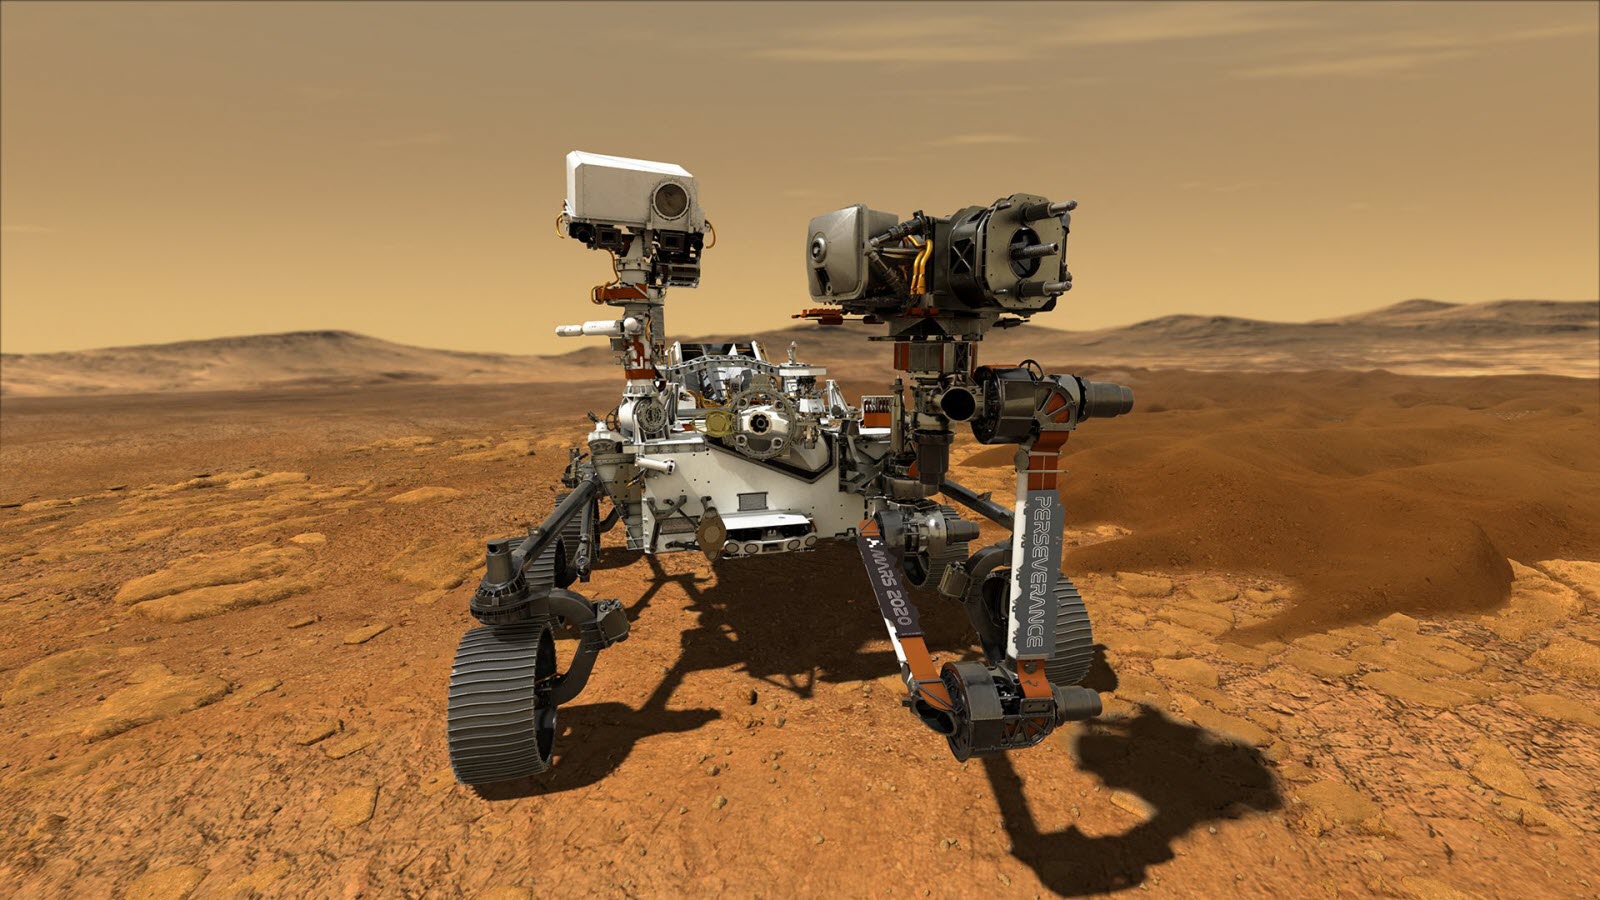 Marte tenía suficiente carbono orgánico para la vida, los científicos de la NASA descifran datos de Curiosity